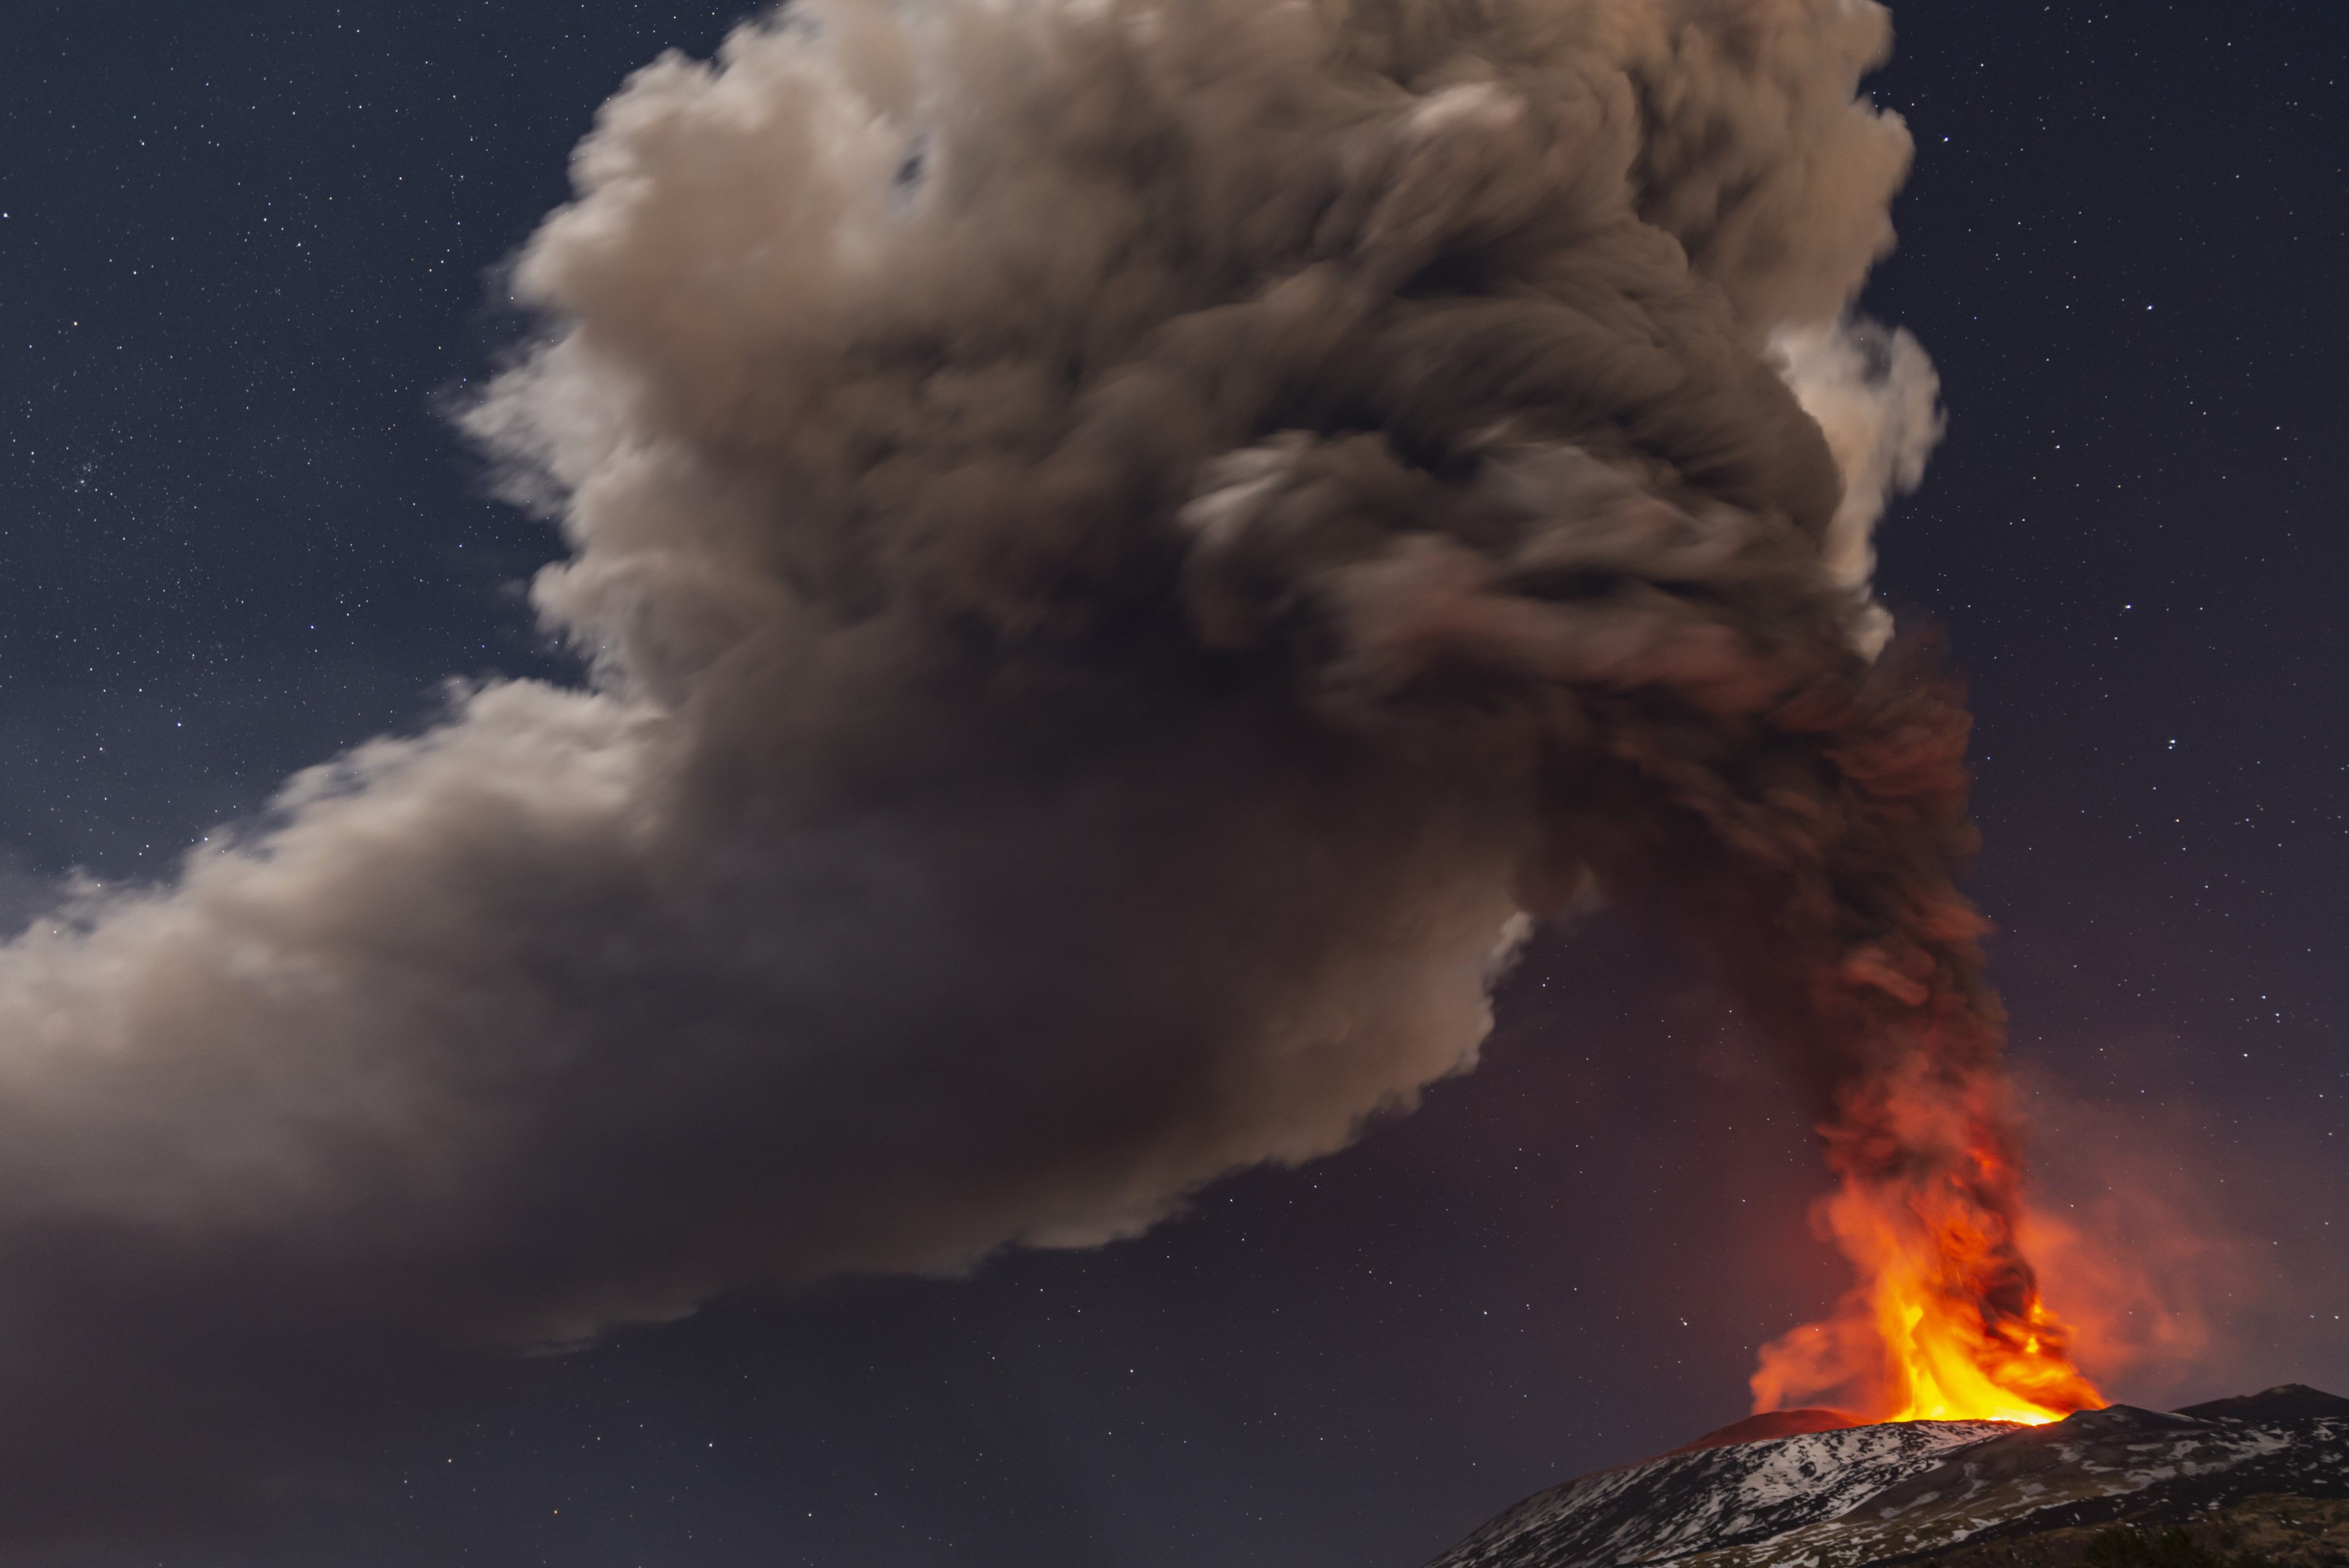 Vulcão Etna, em Itália, que entrou novamente em erupção na noite desta quinta-feira, lançando uma nuvem de fumo, cinzas e lava que atingiu os oito quilómetros